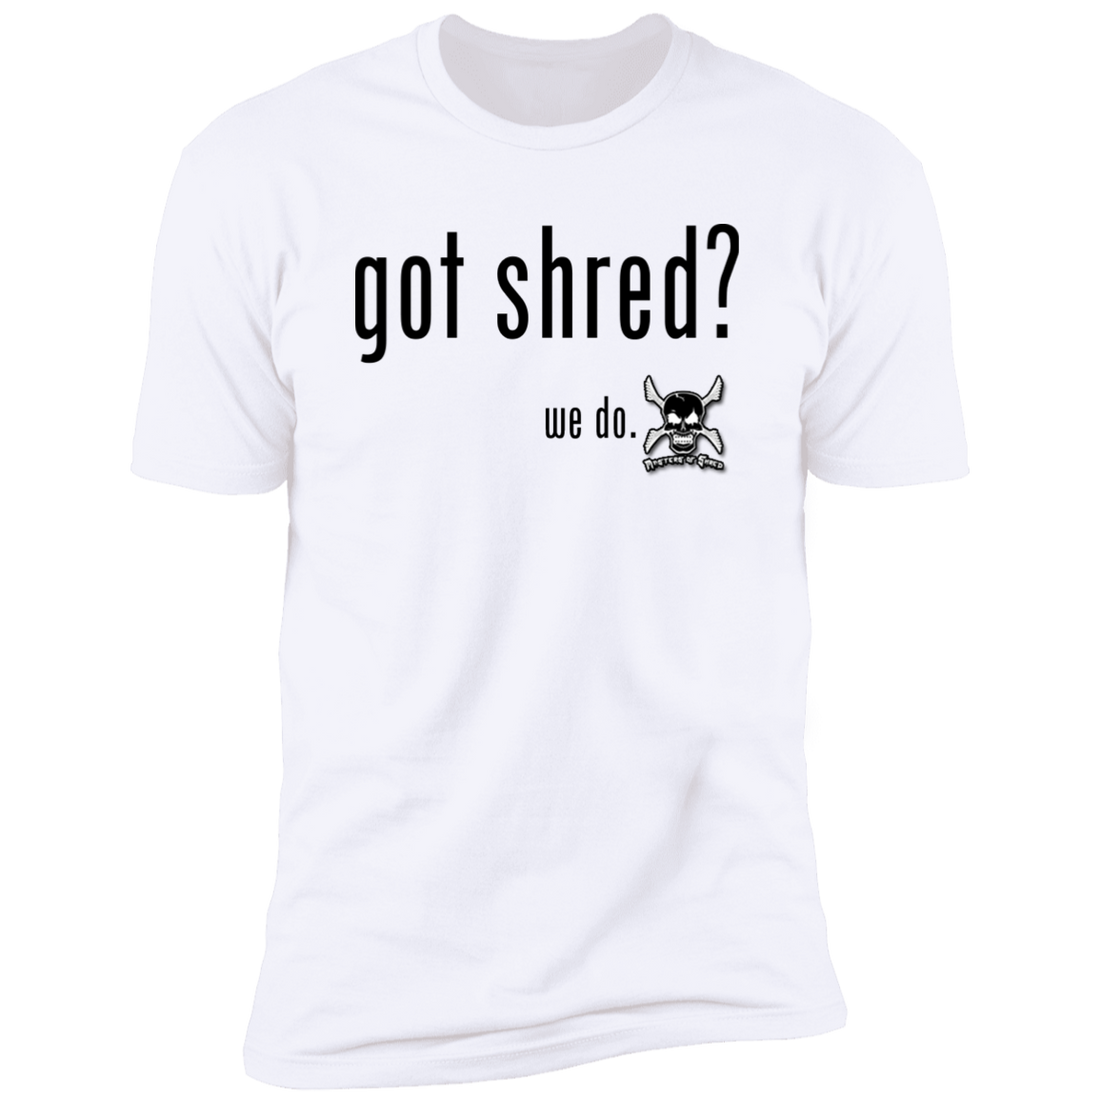 Got Shred?